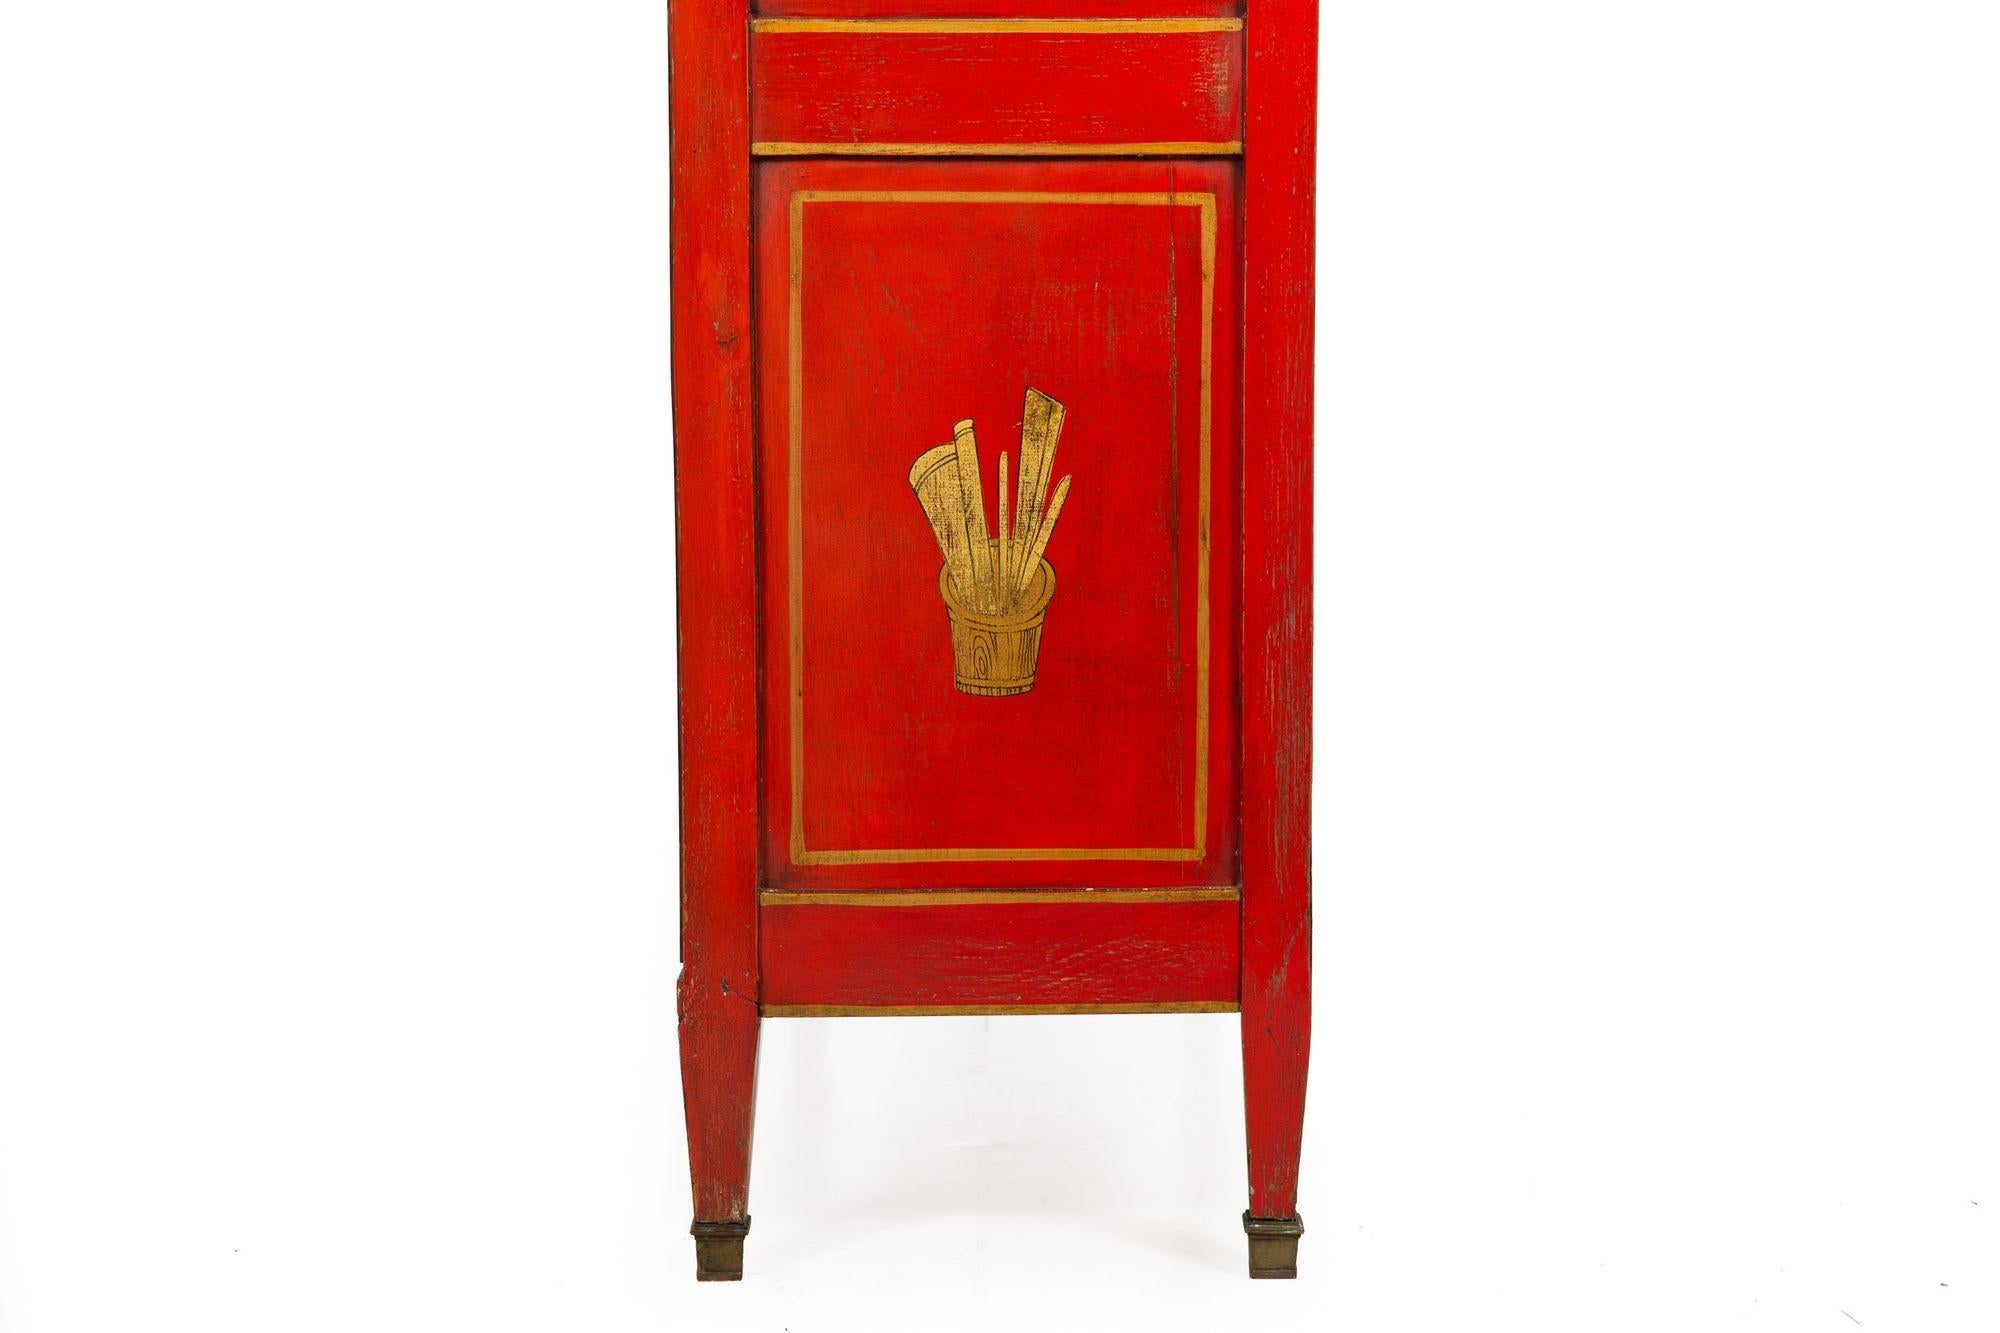 Doré Bureau d'automne de style Louis XVI du 19ème siècle, rouge chinoiserie française ancienne